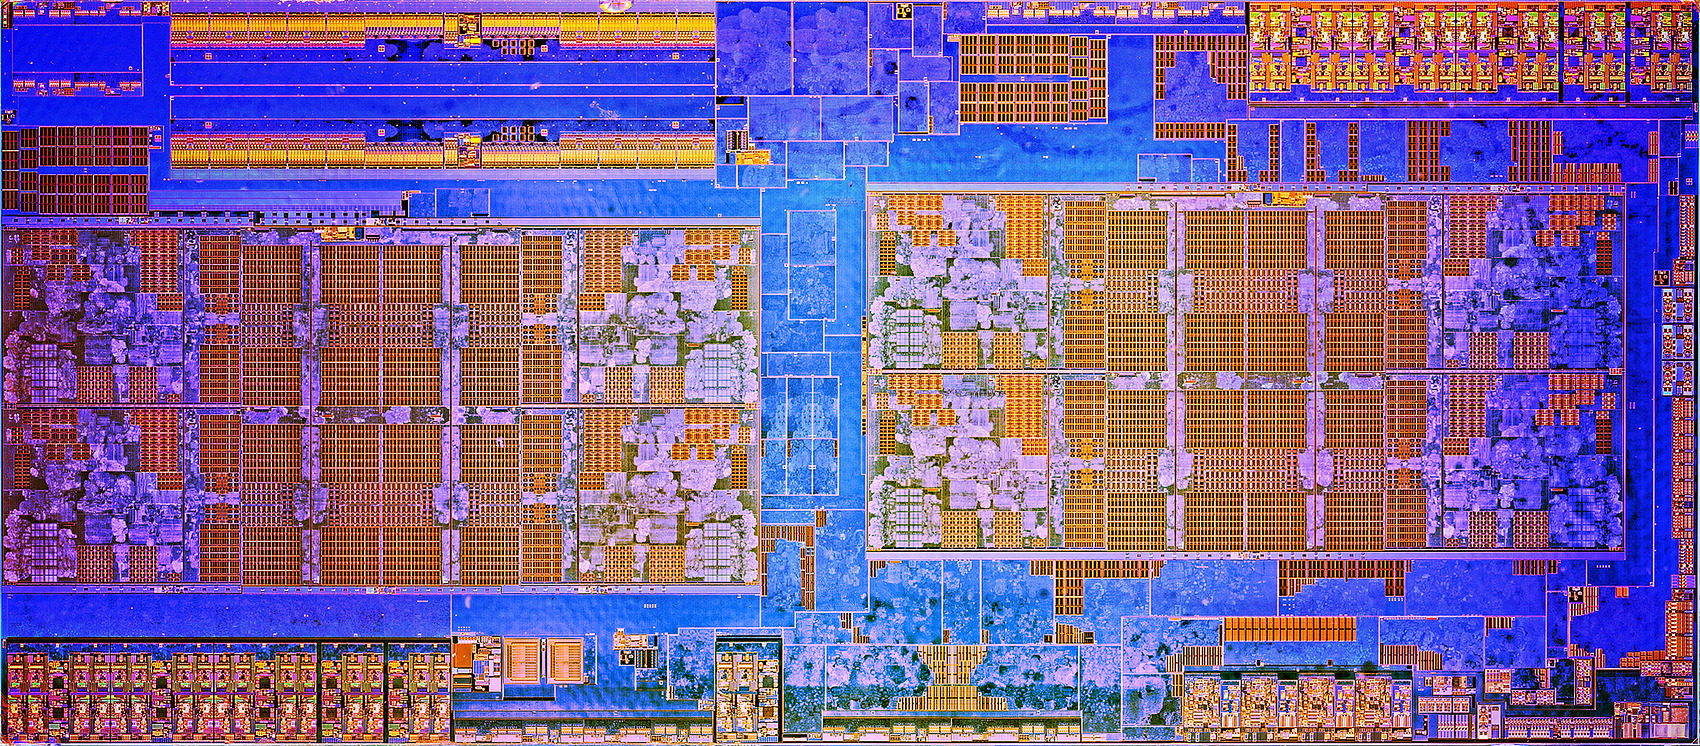 Le processeur AMD Ryzen 5 5600X profite d'une belle réduction